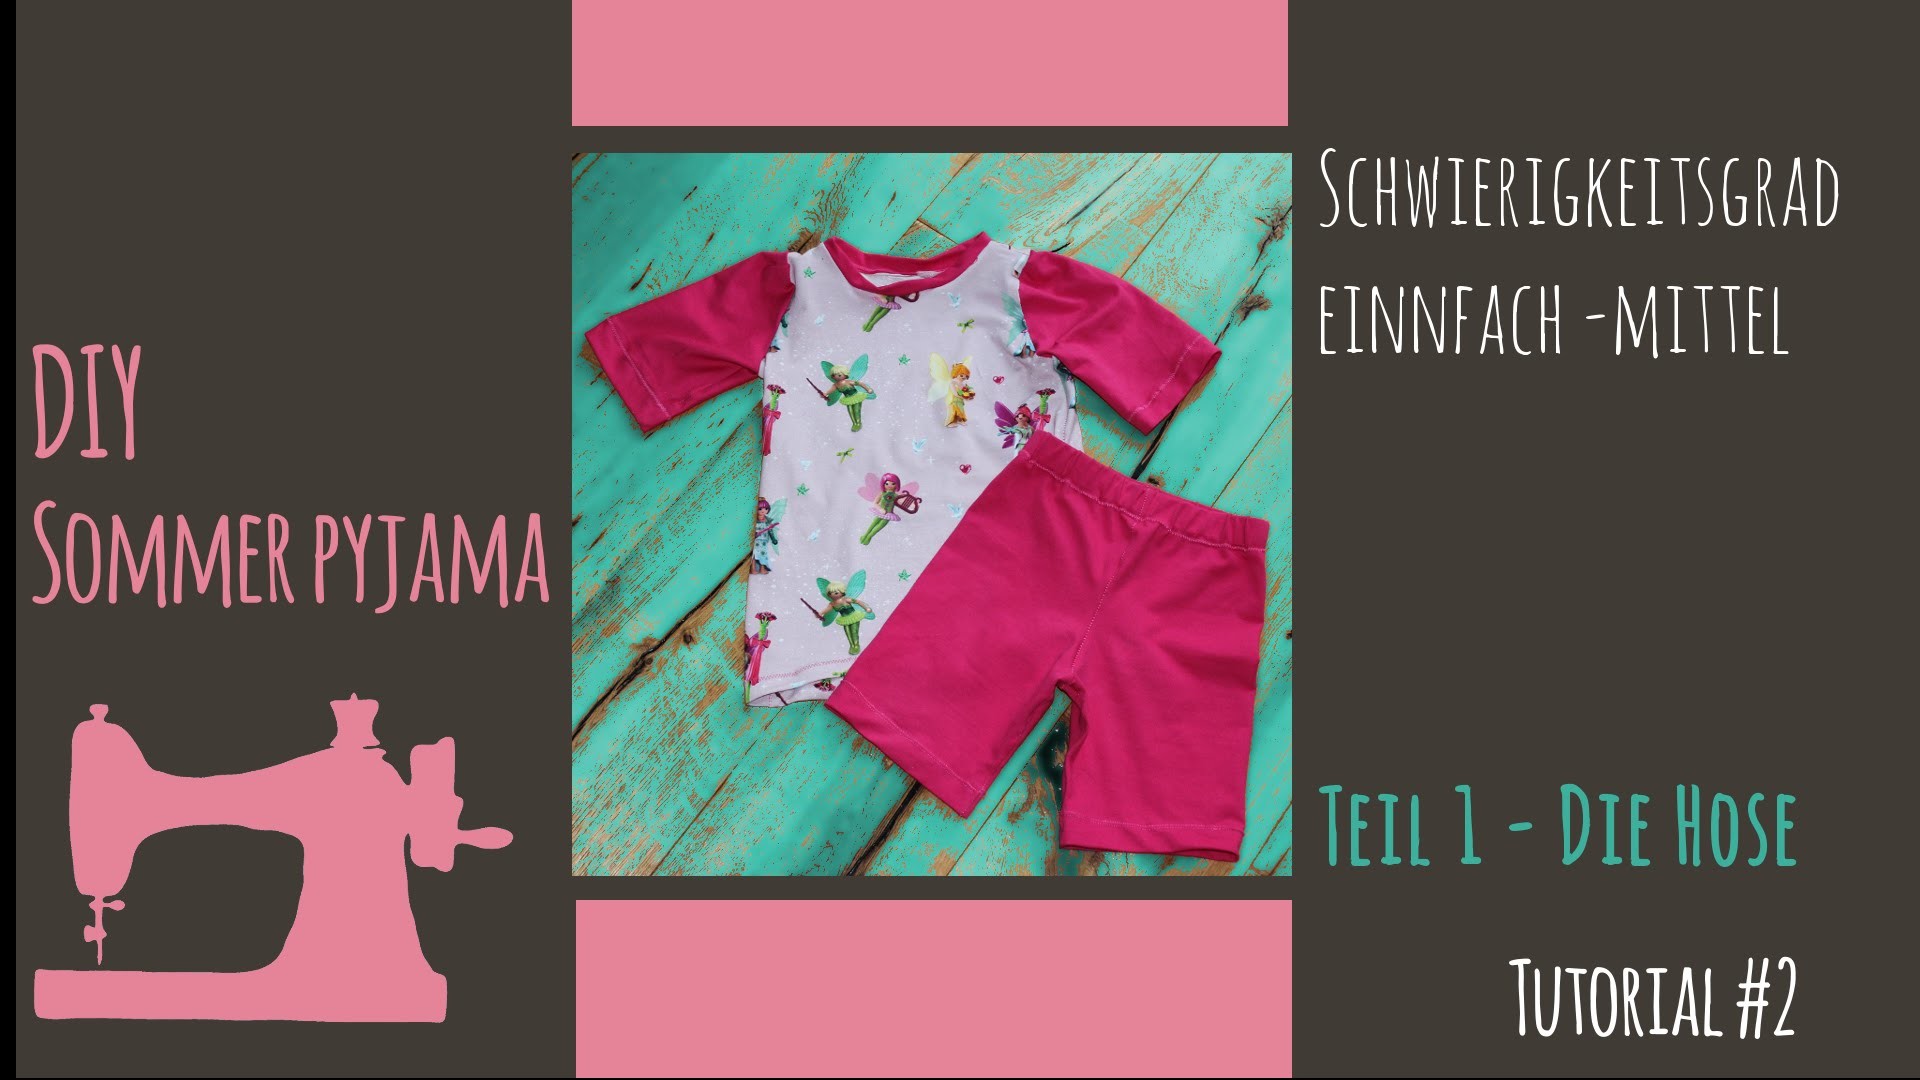 DIY  Sommer Pyjama for Kids Teil 1 "die Hose"